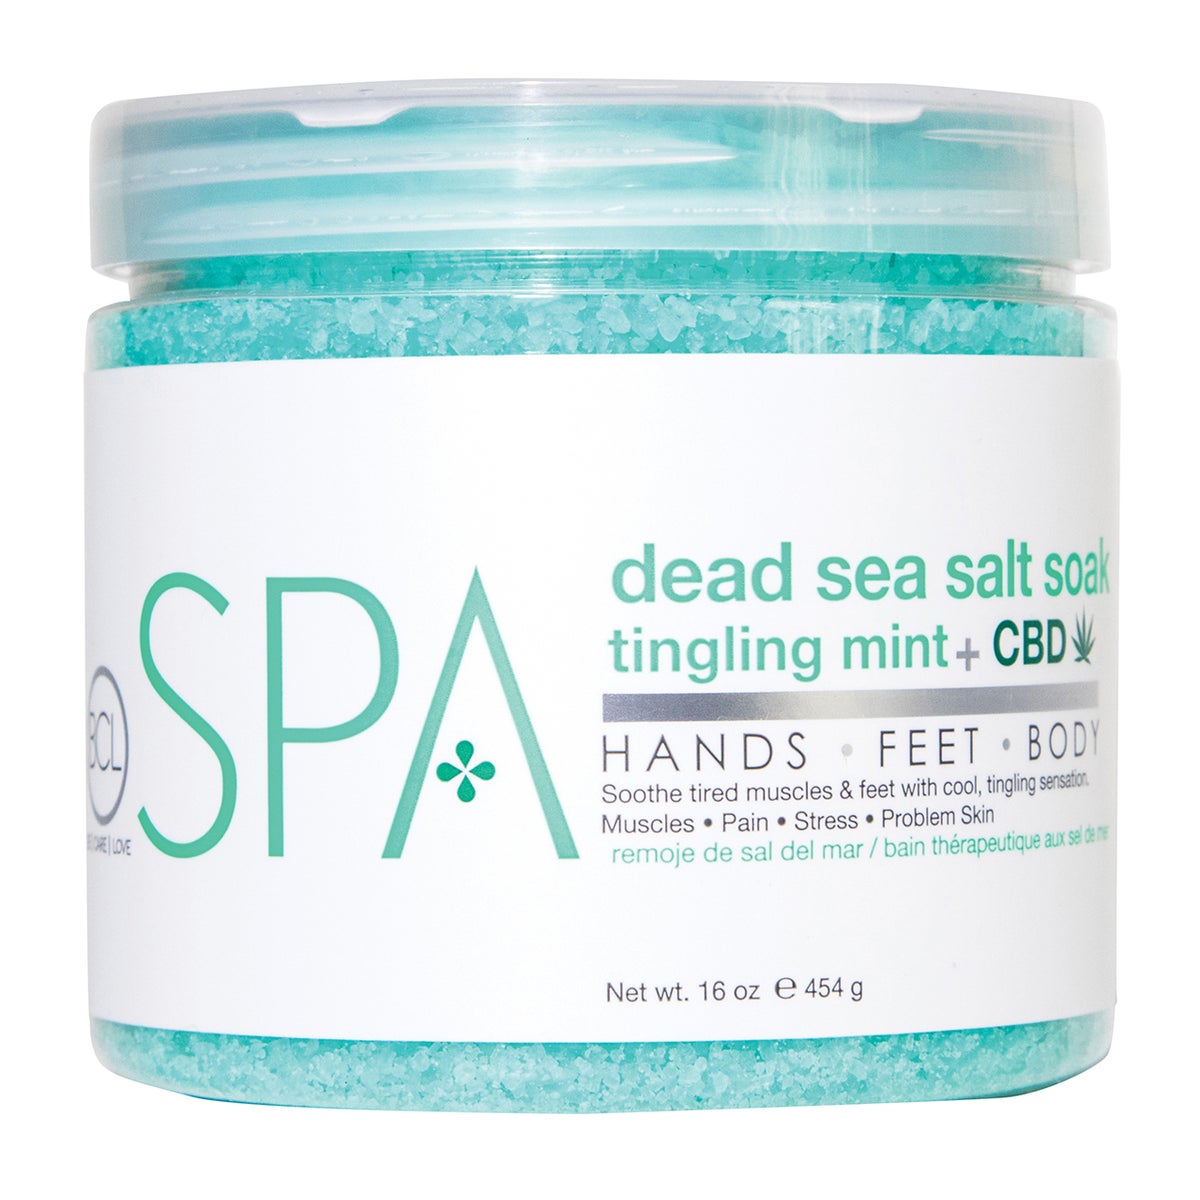 Dannyco - Spa Dead Sea Salt Soak Tingling Mint + CBD 16oz